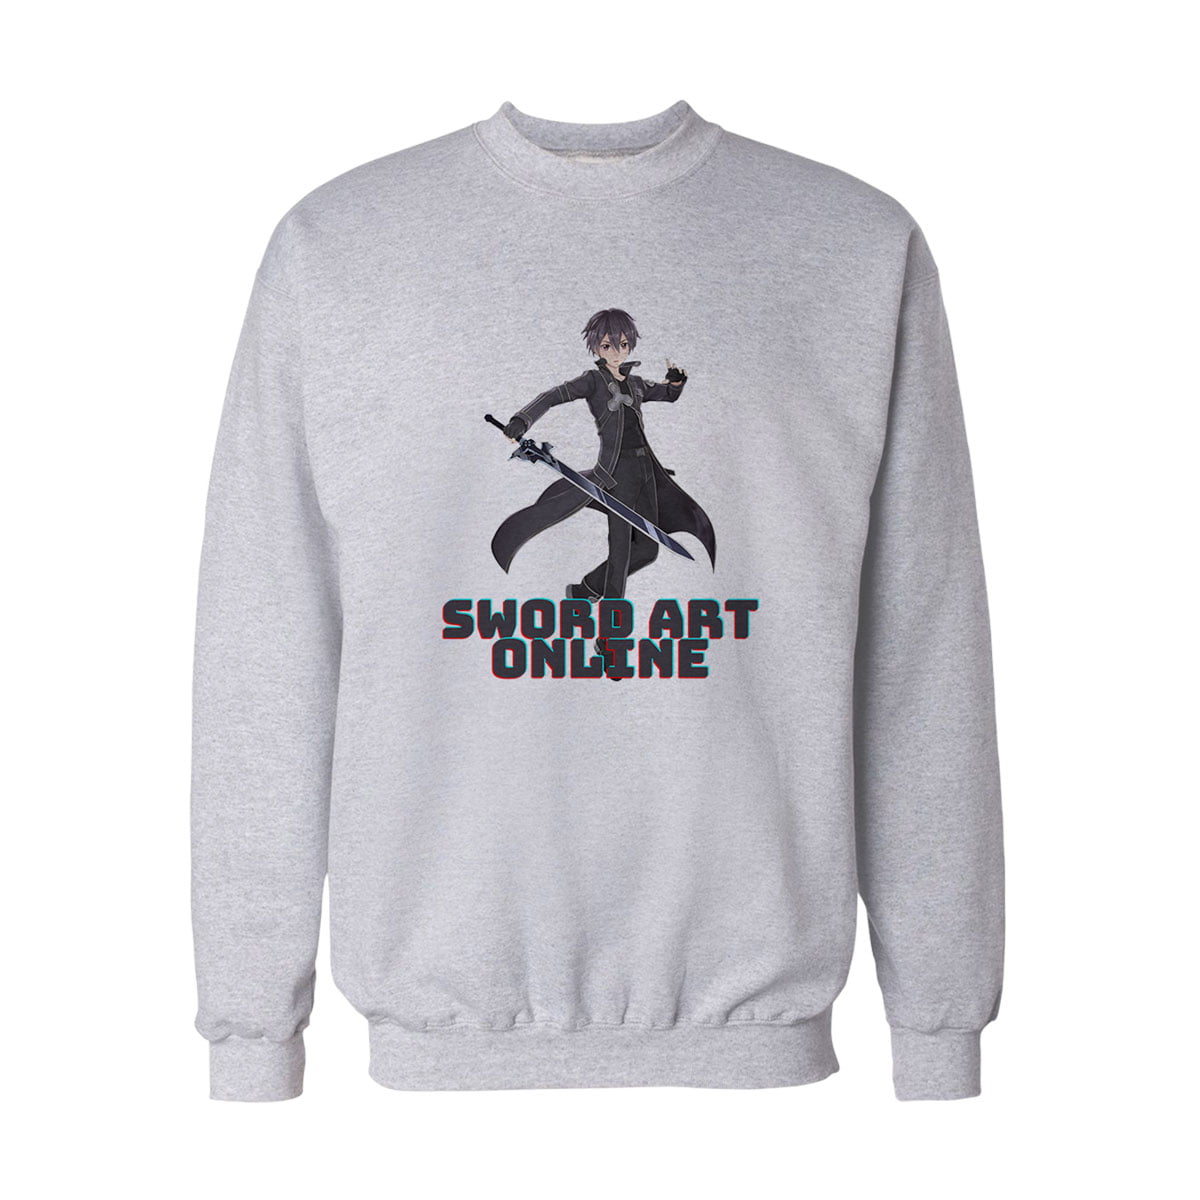 Sword art online kirito sweatshirt b - sword art online - kirito baskılı sweatshirt - figurex